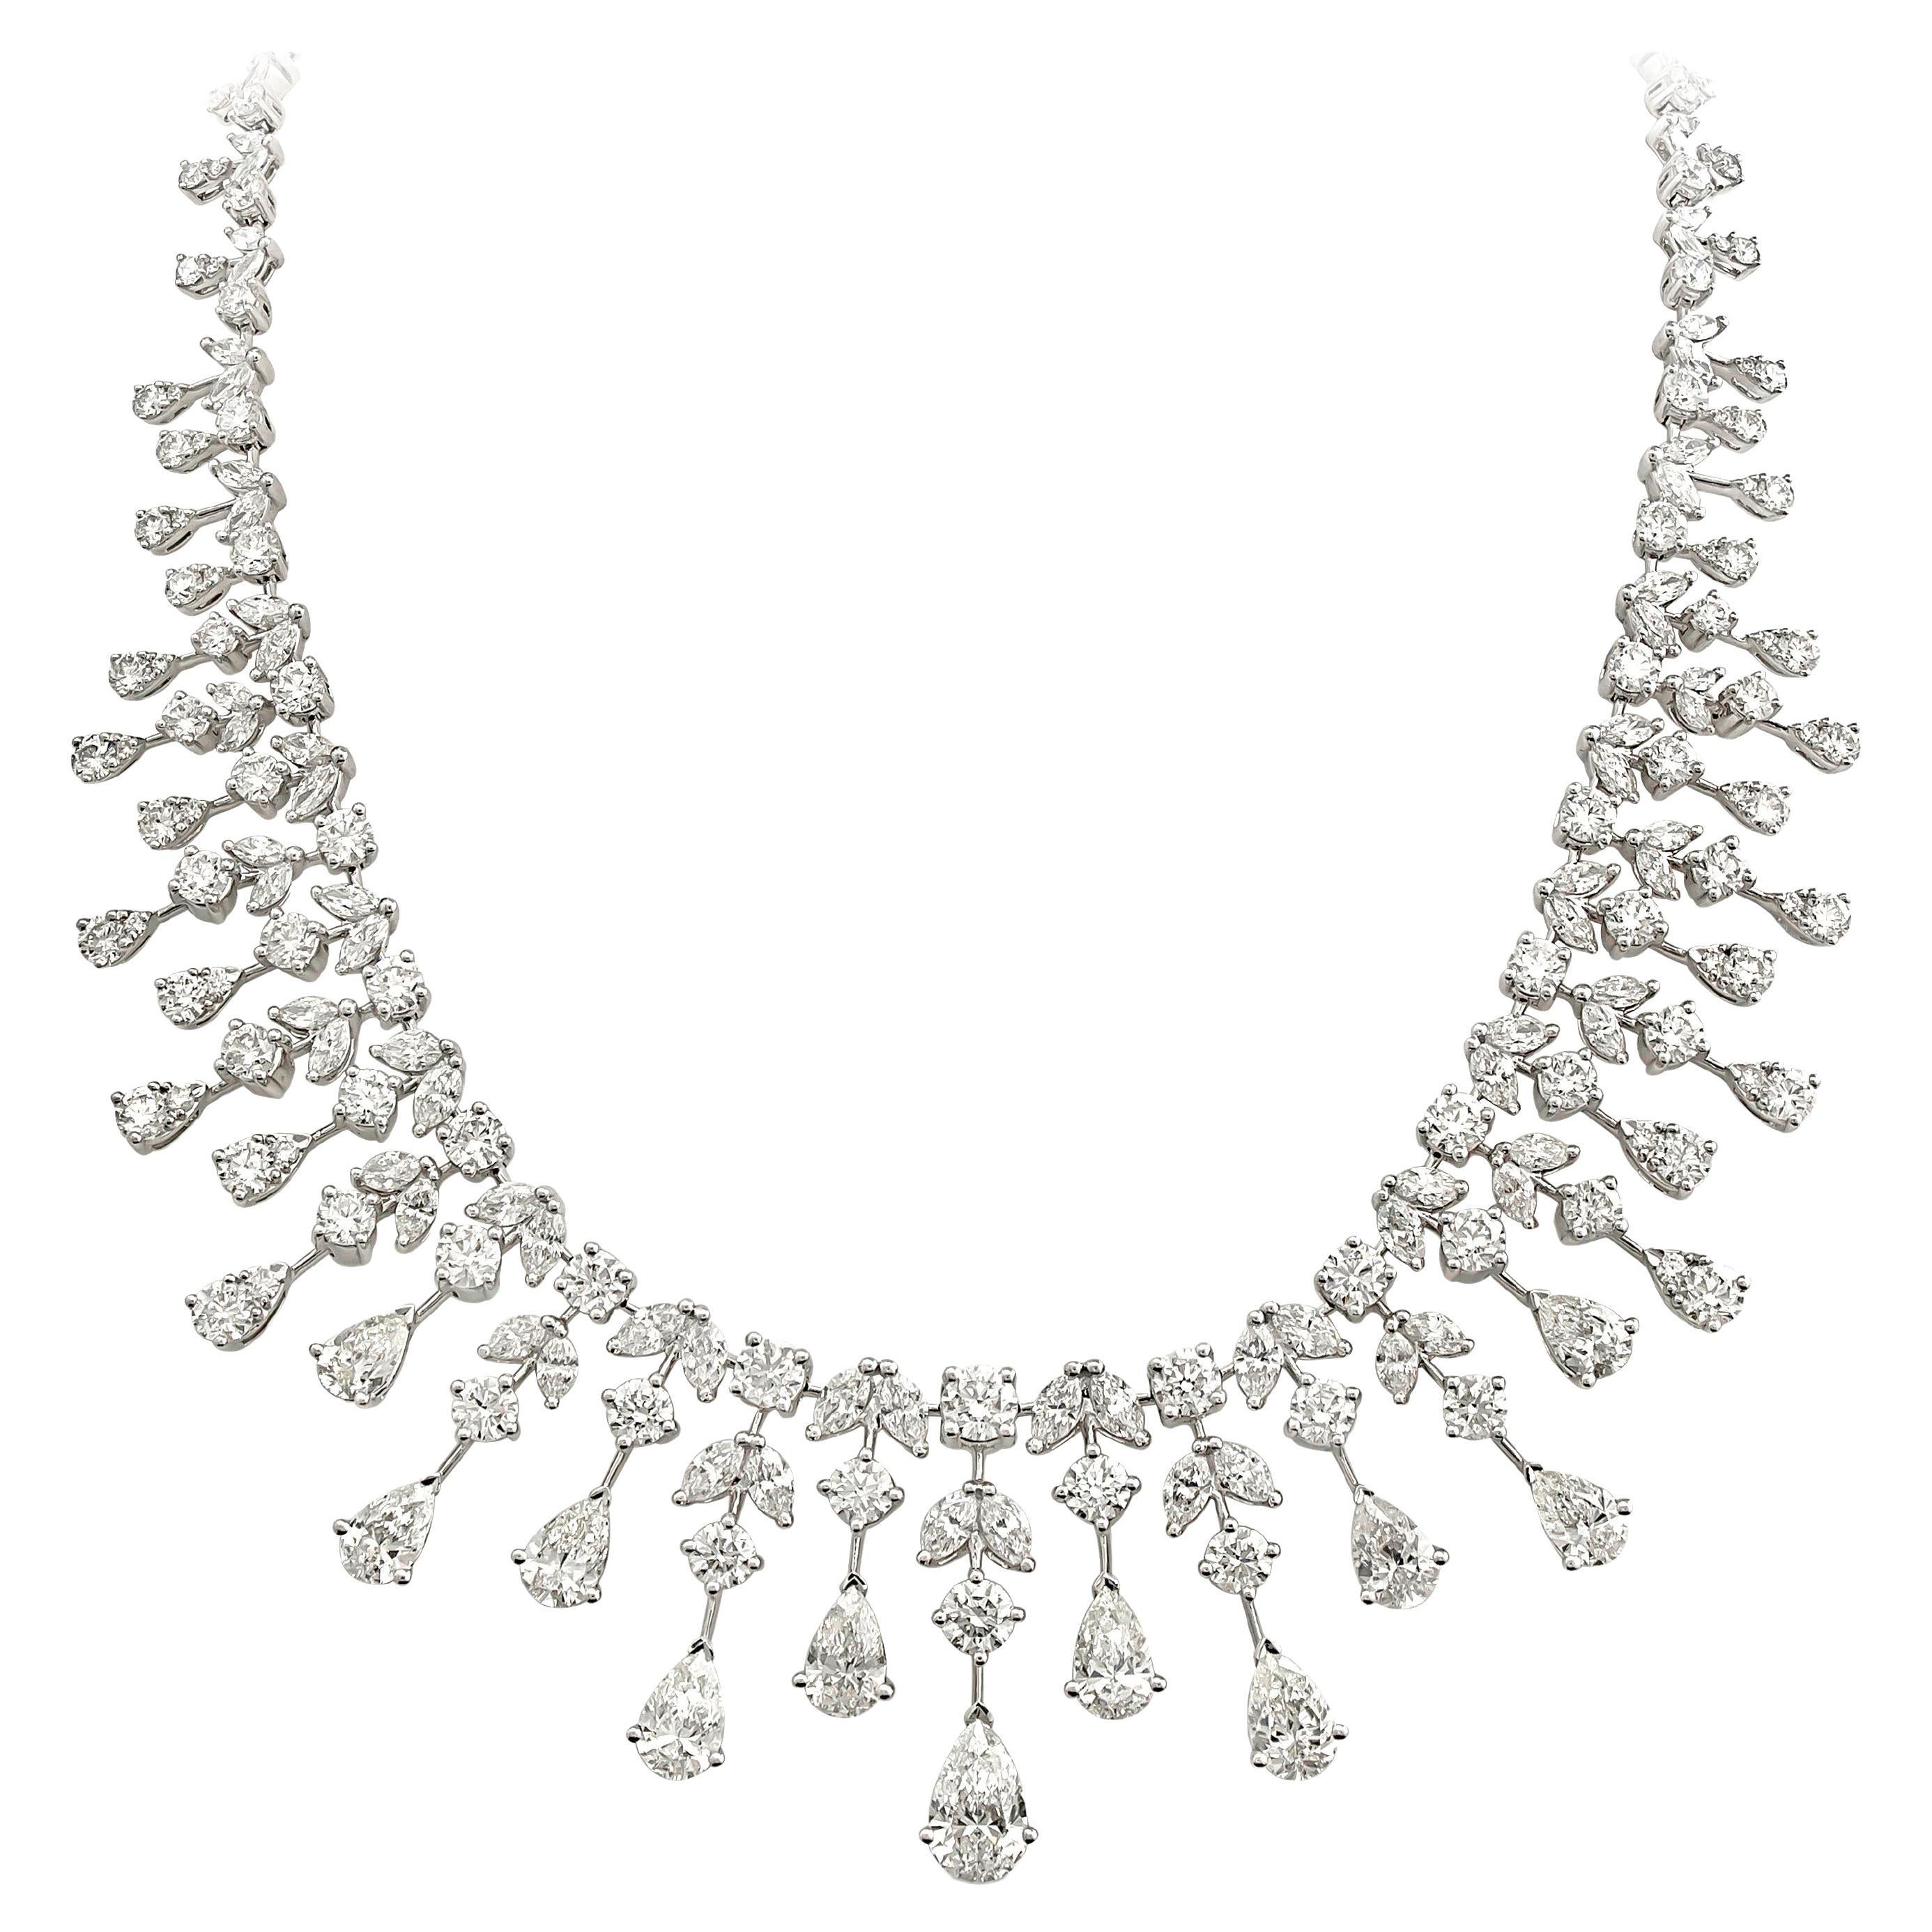 Luxueux et élégant collier chandelier en diamants mettant en valeur 276 diamants ronds, poires et marquises de taille mixte et brillante pesant au total 37,20 carats. Le tout est serti dans un chandelier de diamants en forme de goutte d'eau. Cinq